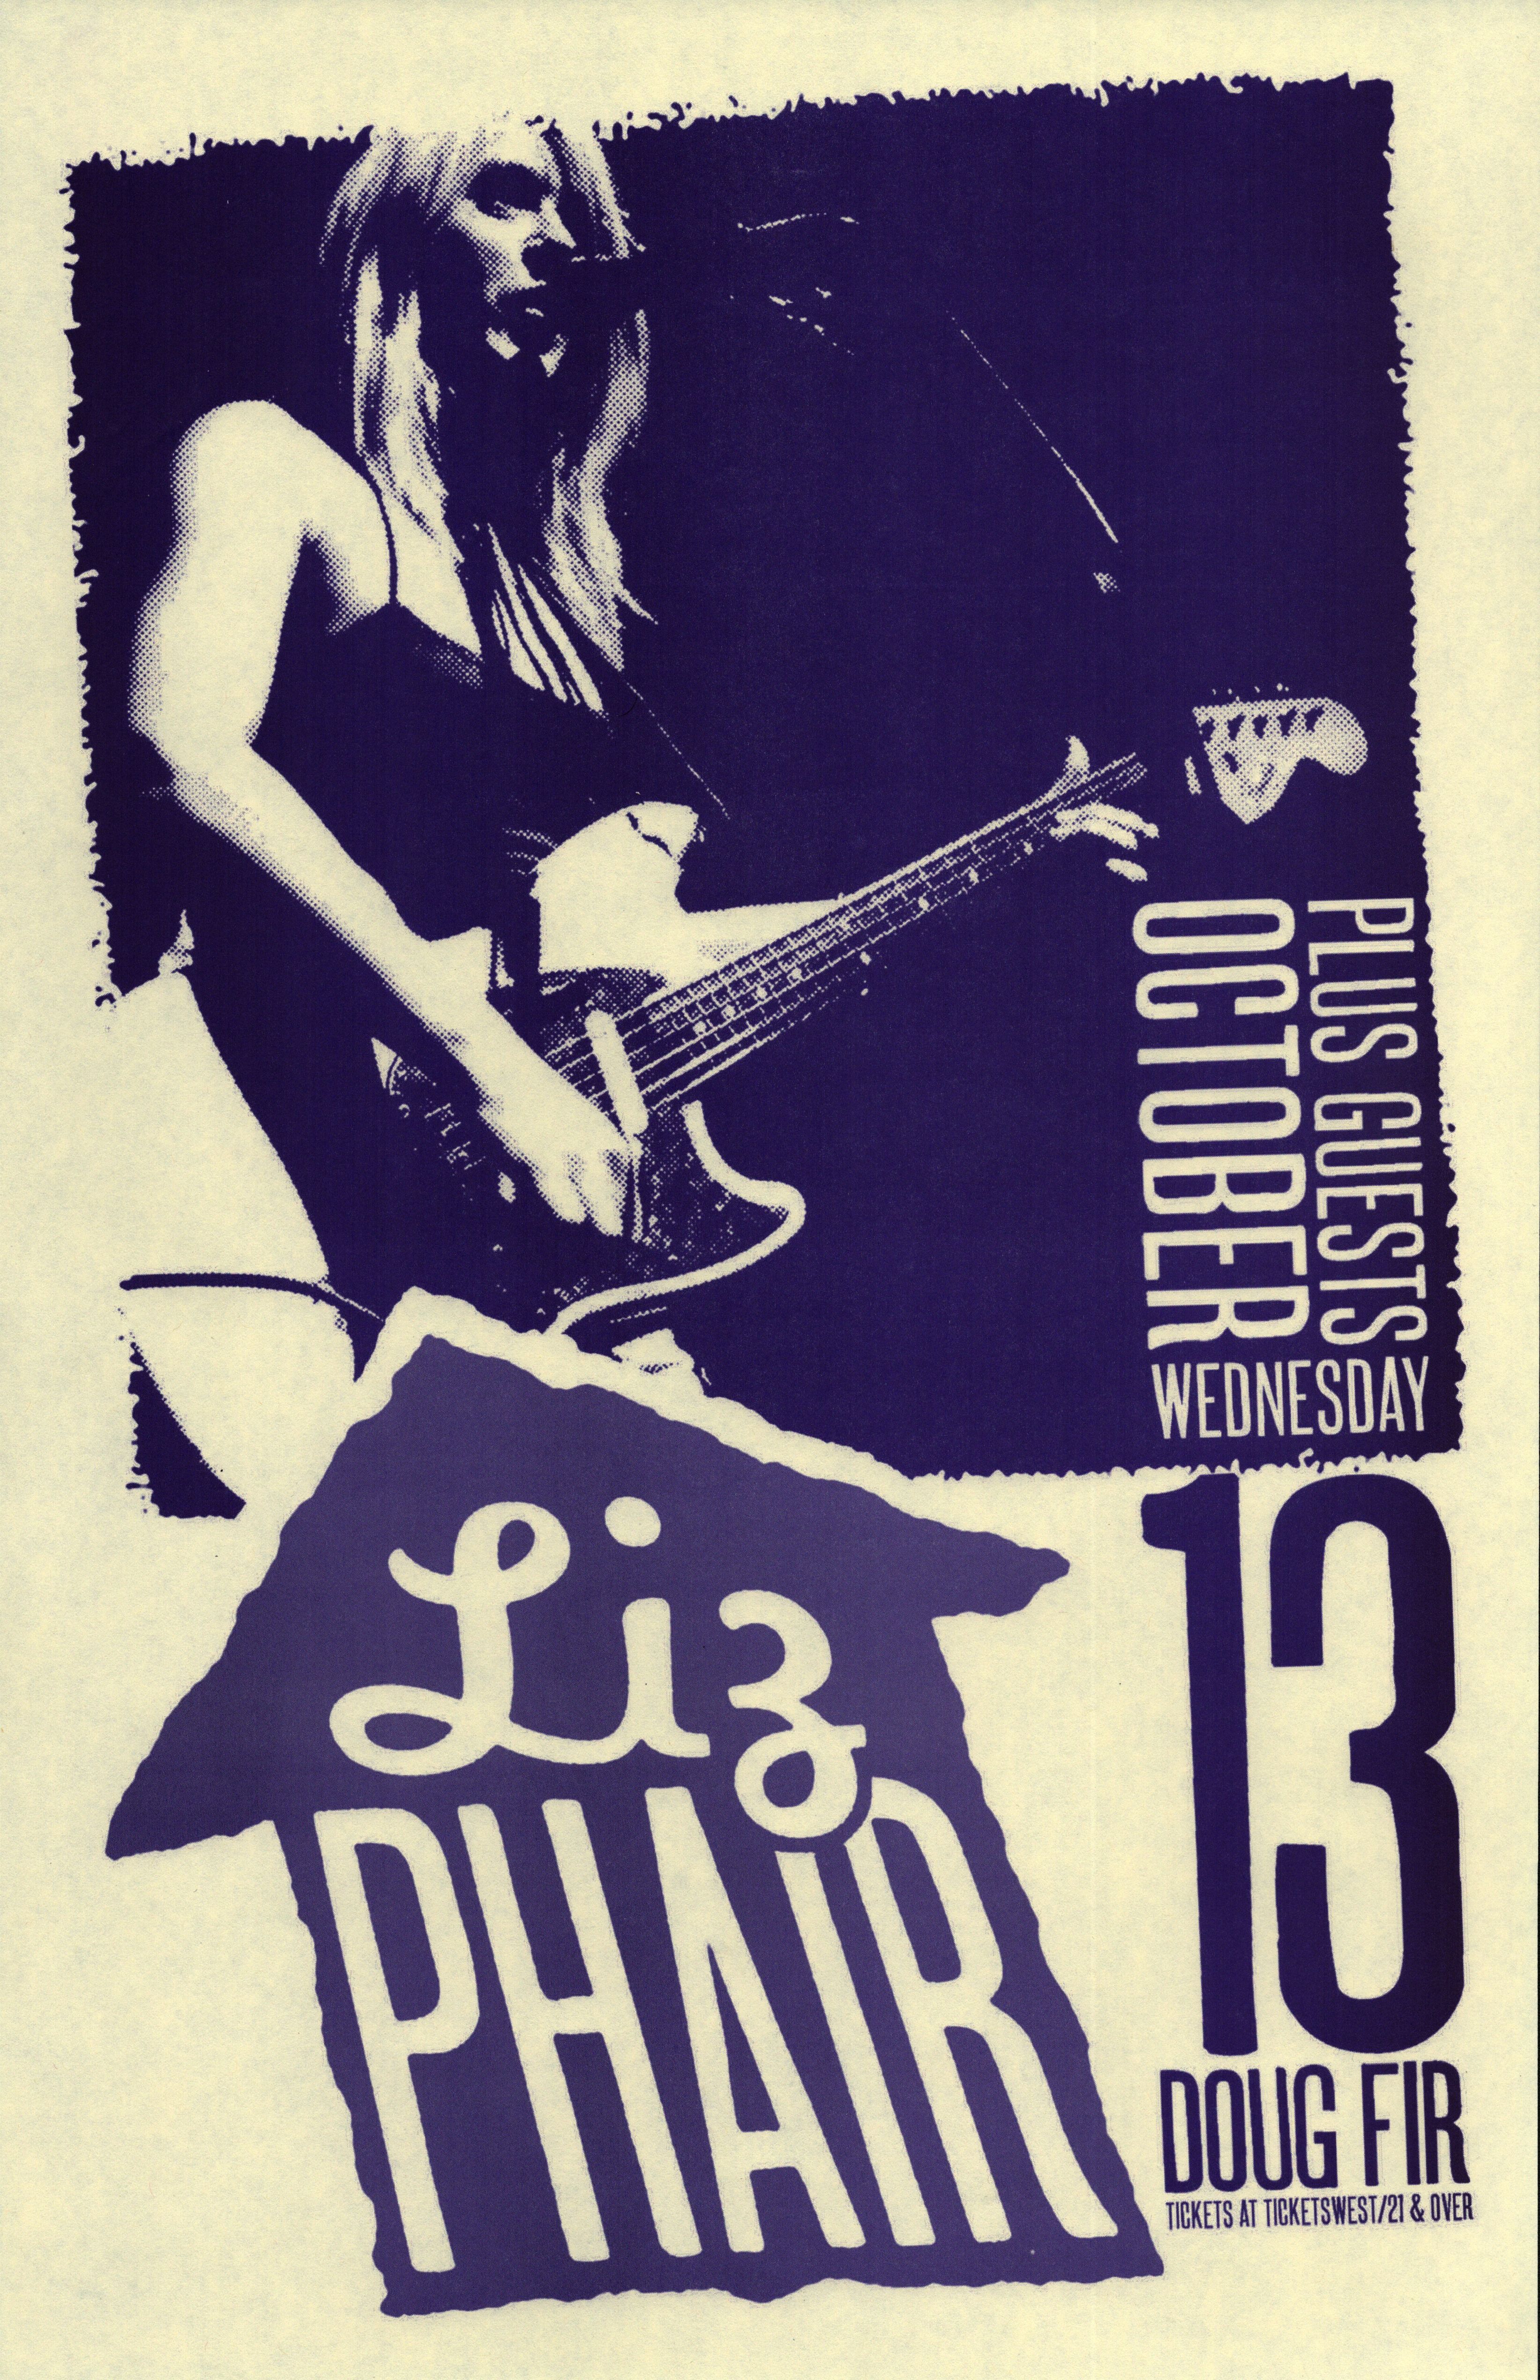 MXP-150.16 Liz Phair Doug Fir 2010 Concert Poster